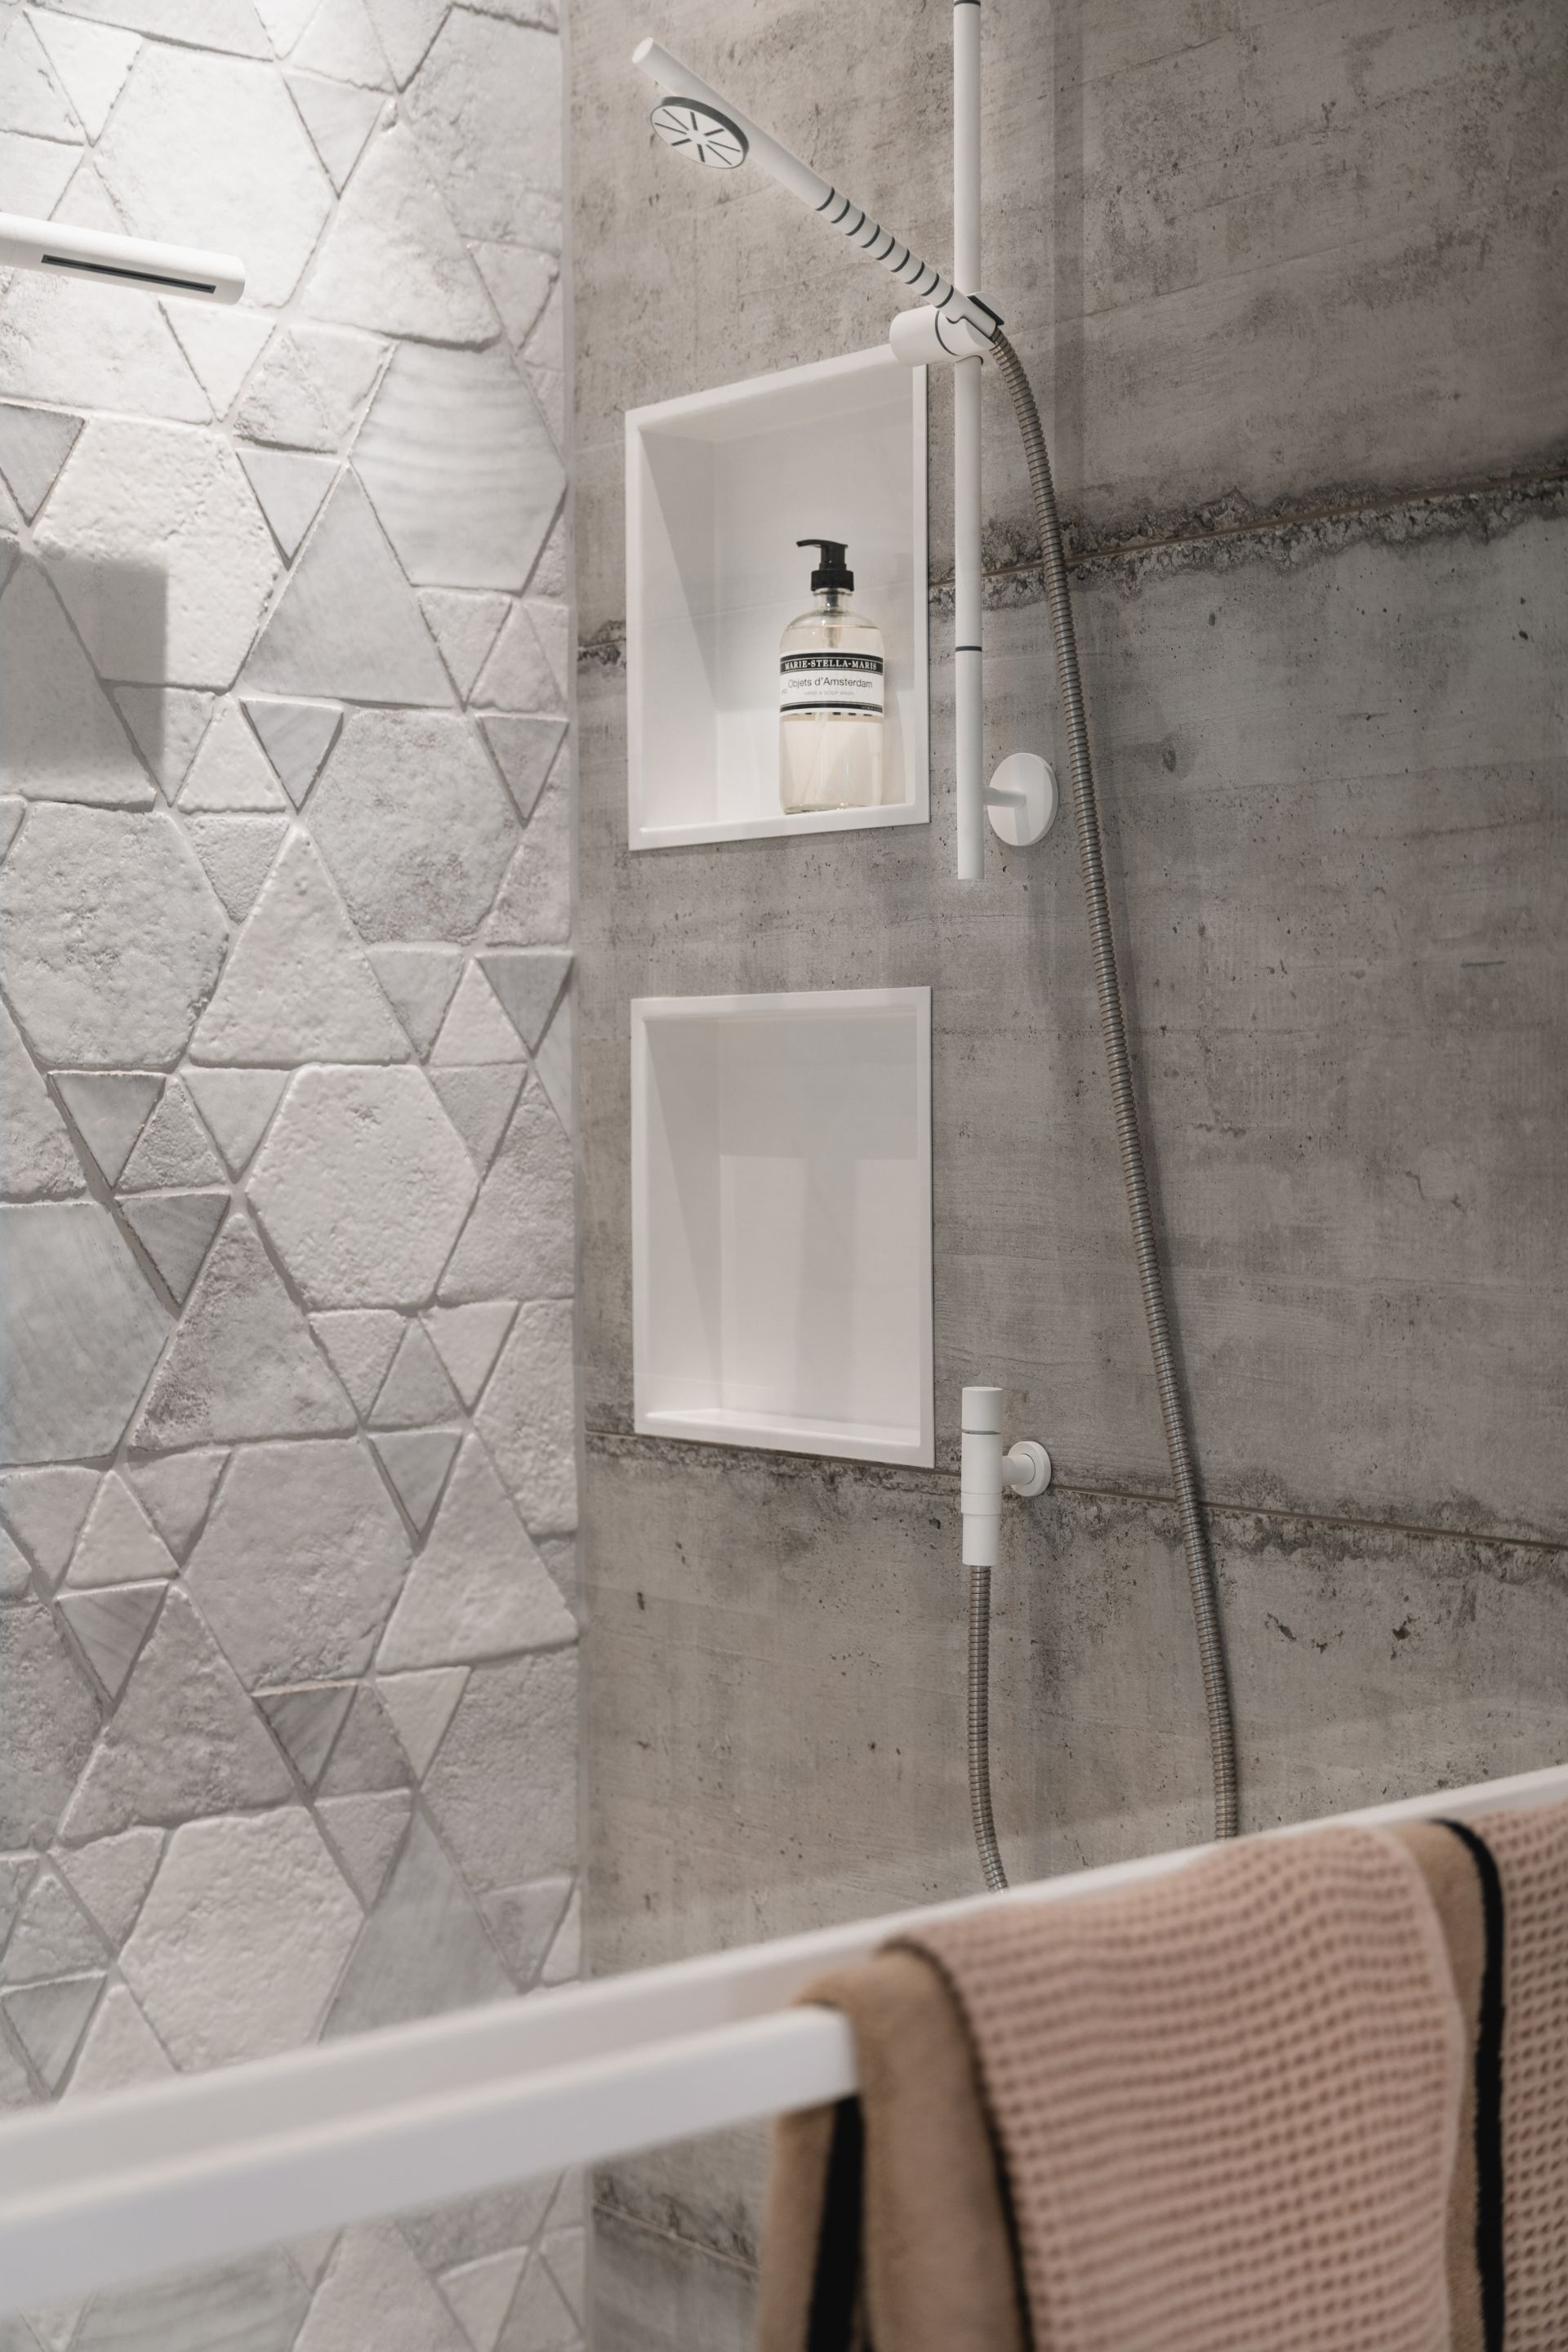 Foto: ultieme witte badkamer met prachtige tegels   eerste kamer badkamers   010